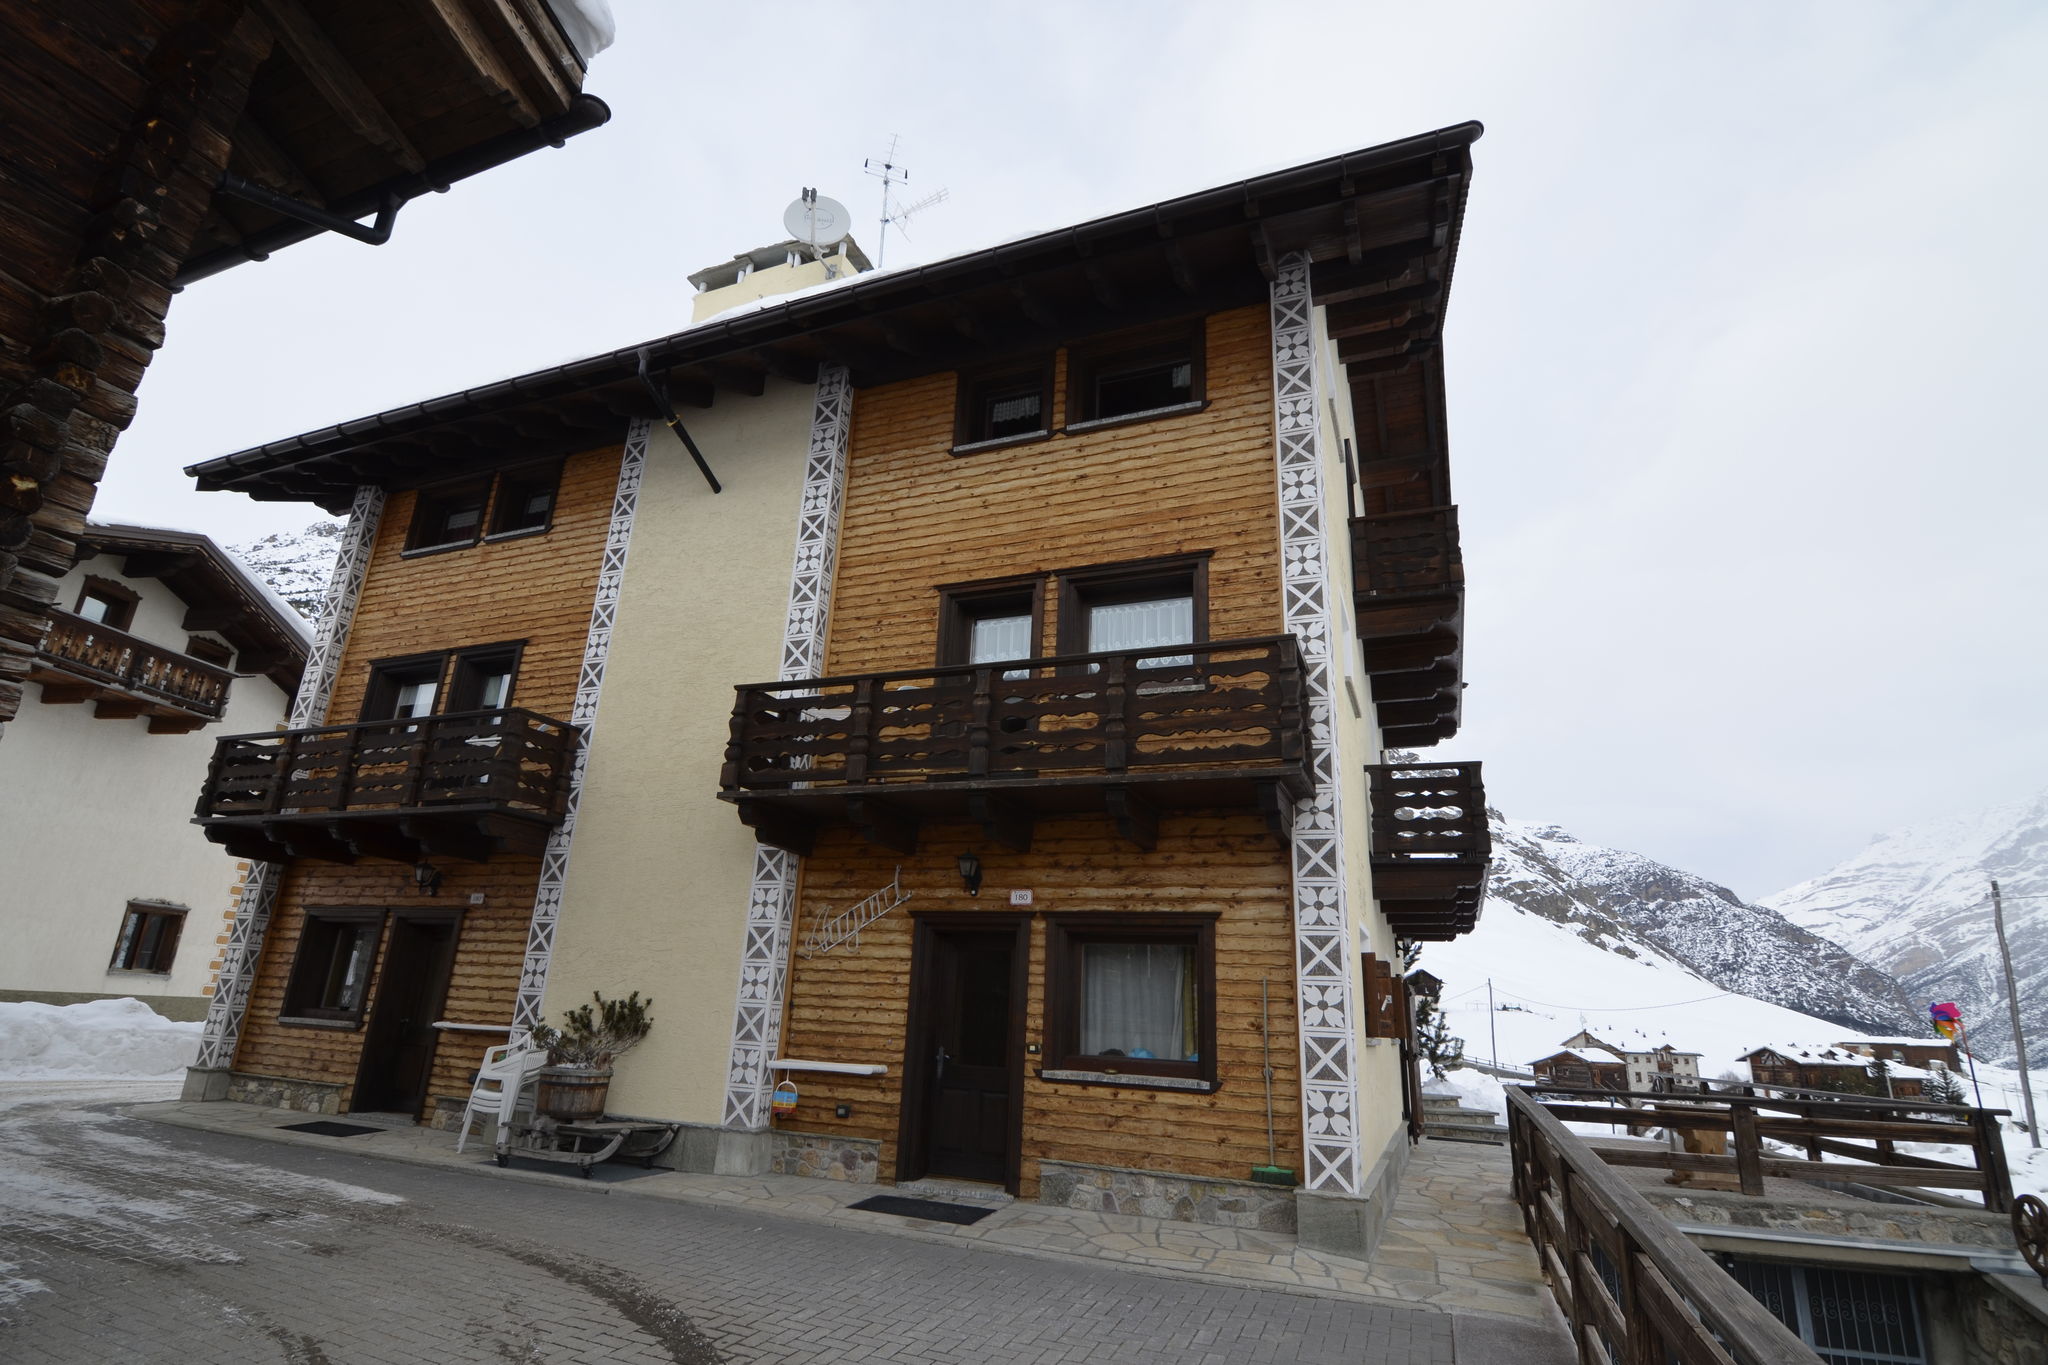 Schönes Ferienhaus in Livigno, Italien nahe dem Skigebiet